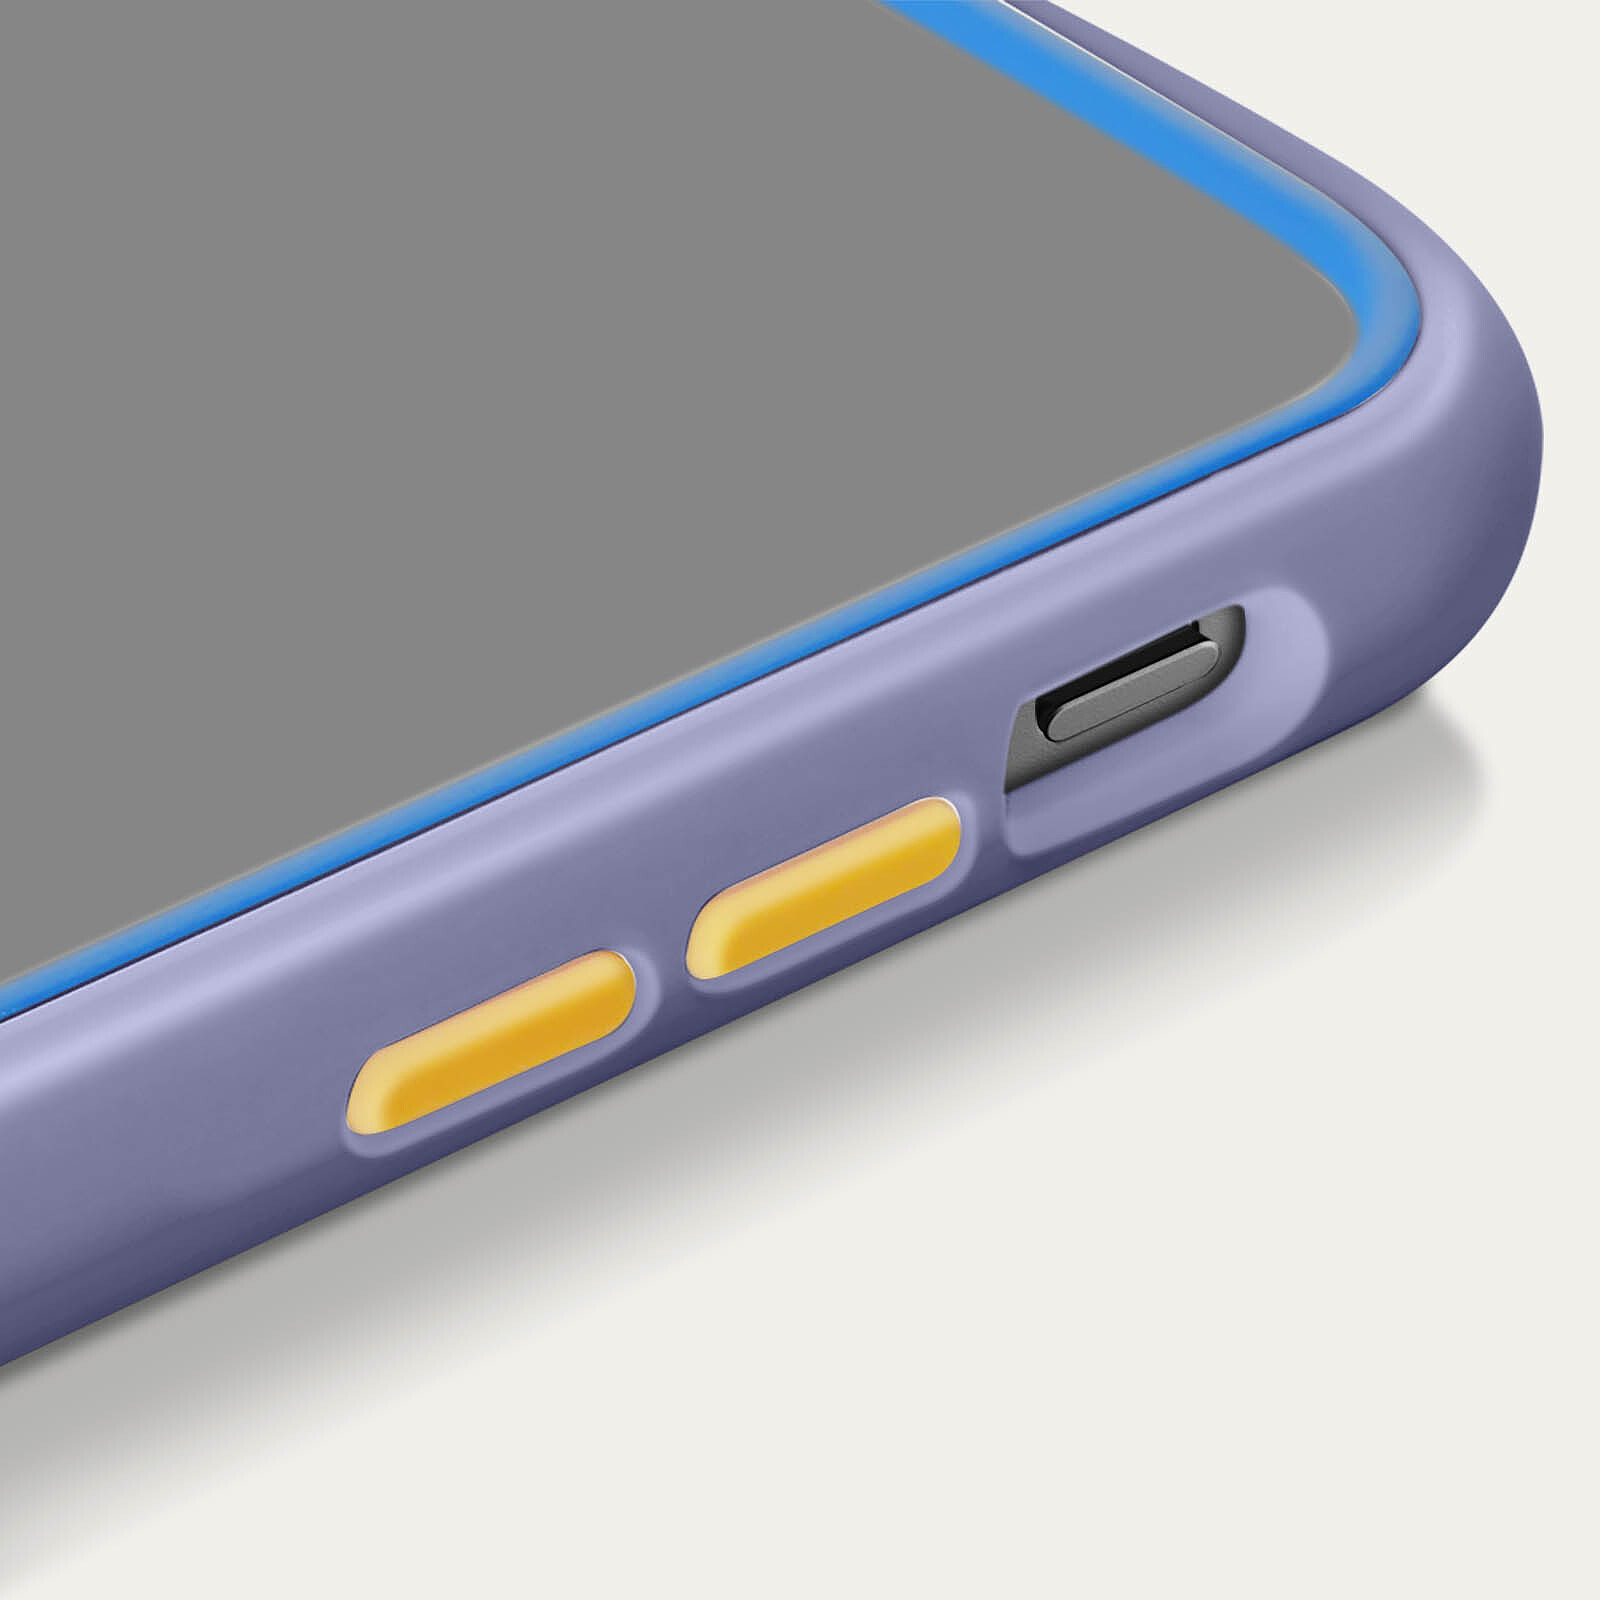 RhinoShield Coque pour iPhone 13 mini Mode Bumper et Renforcé Mod NX violet  - Coque téléphone - LDLC